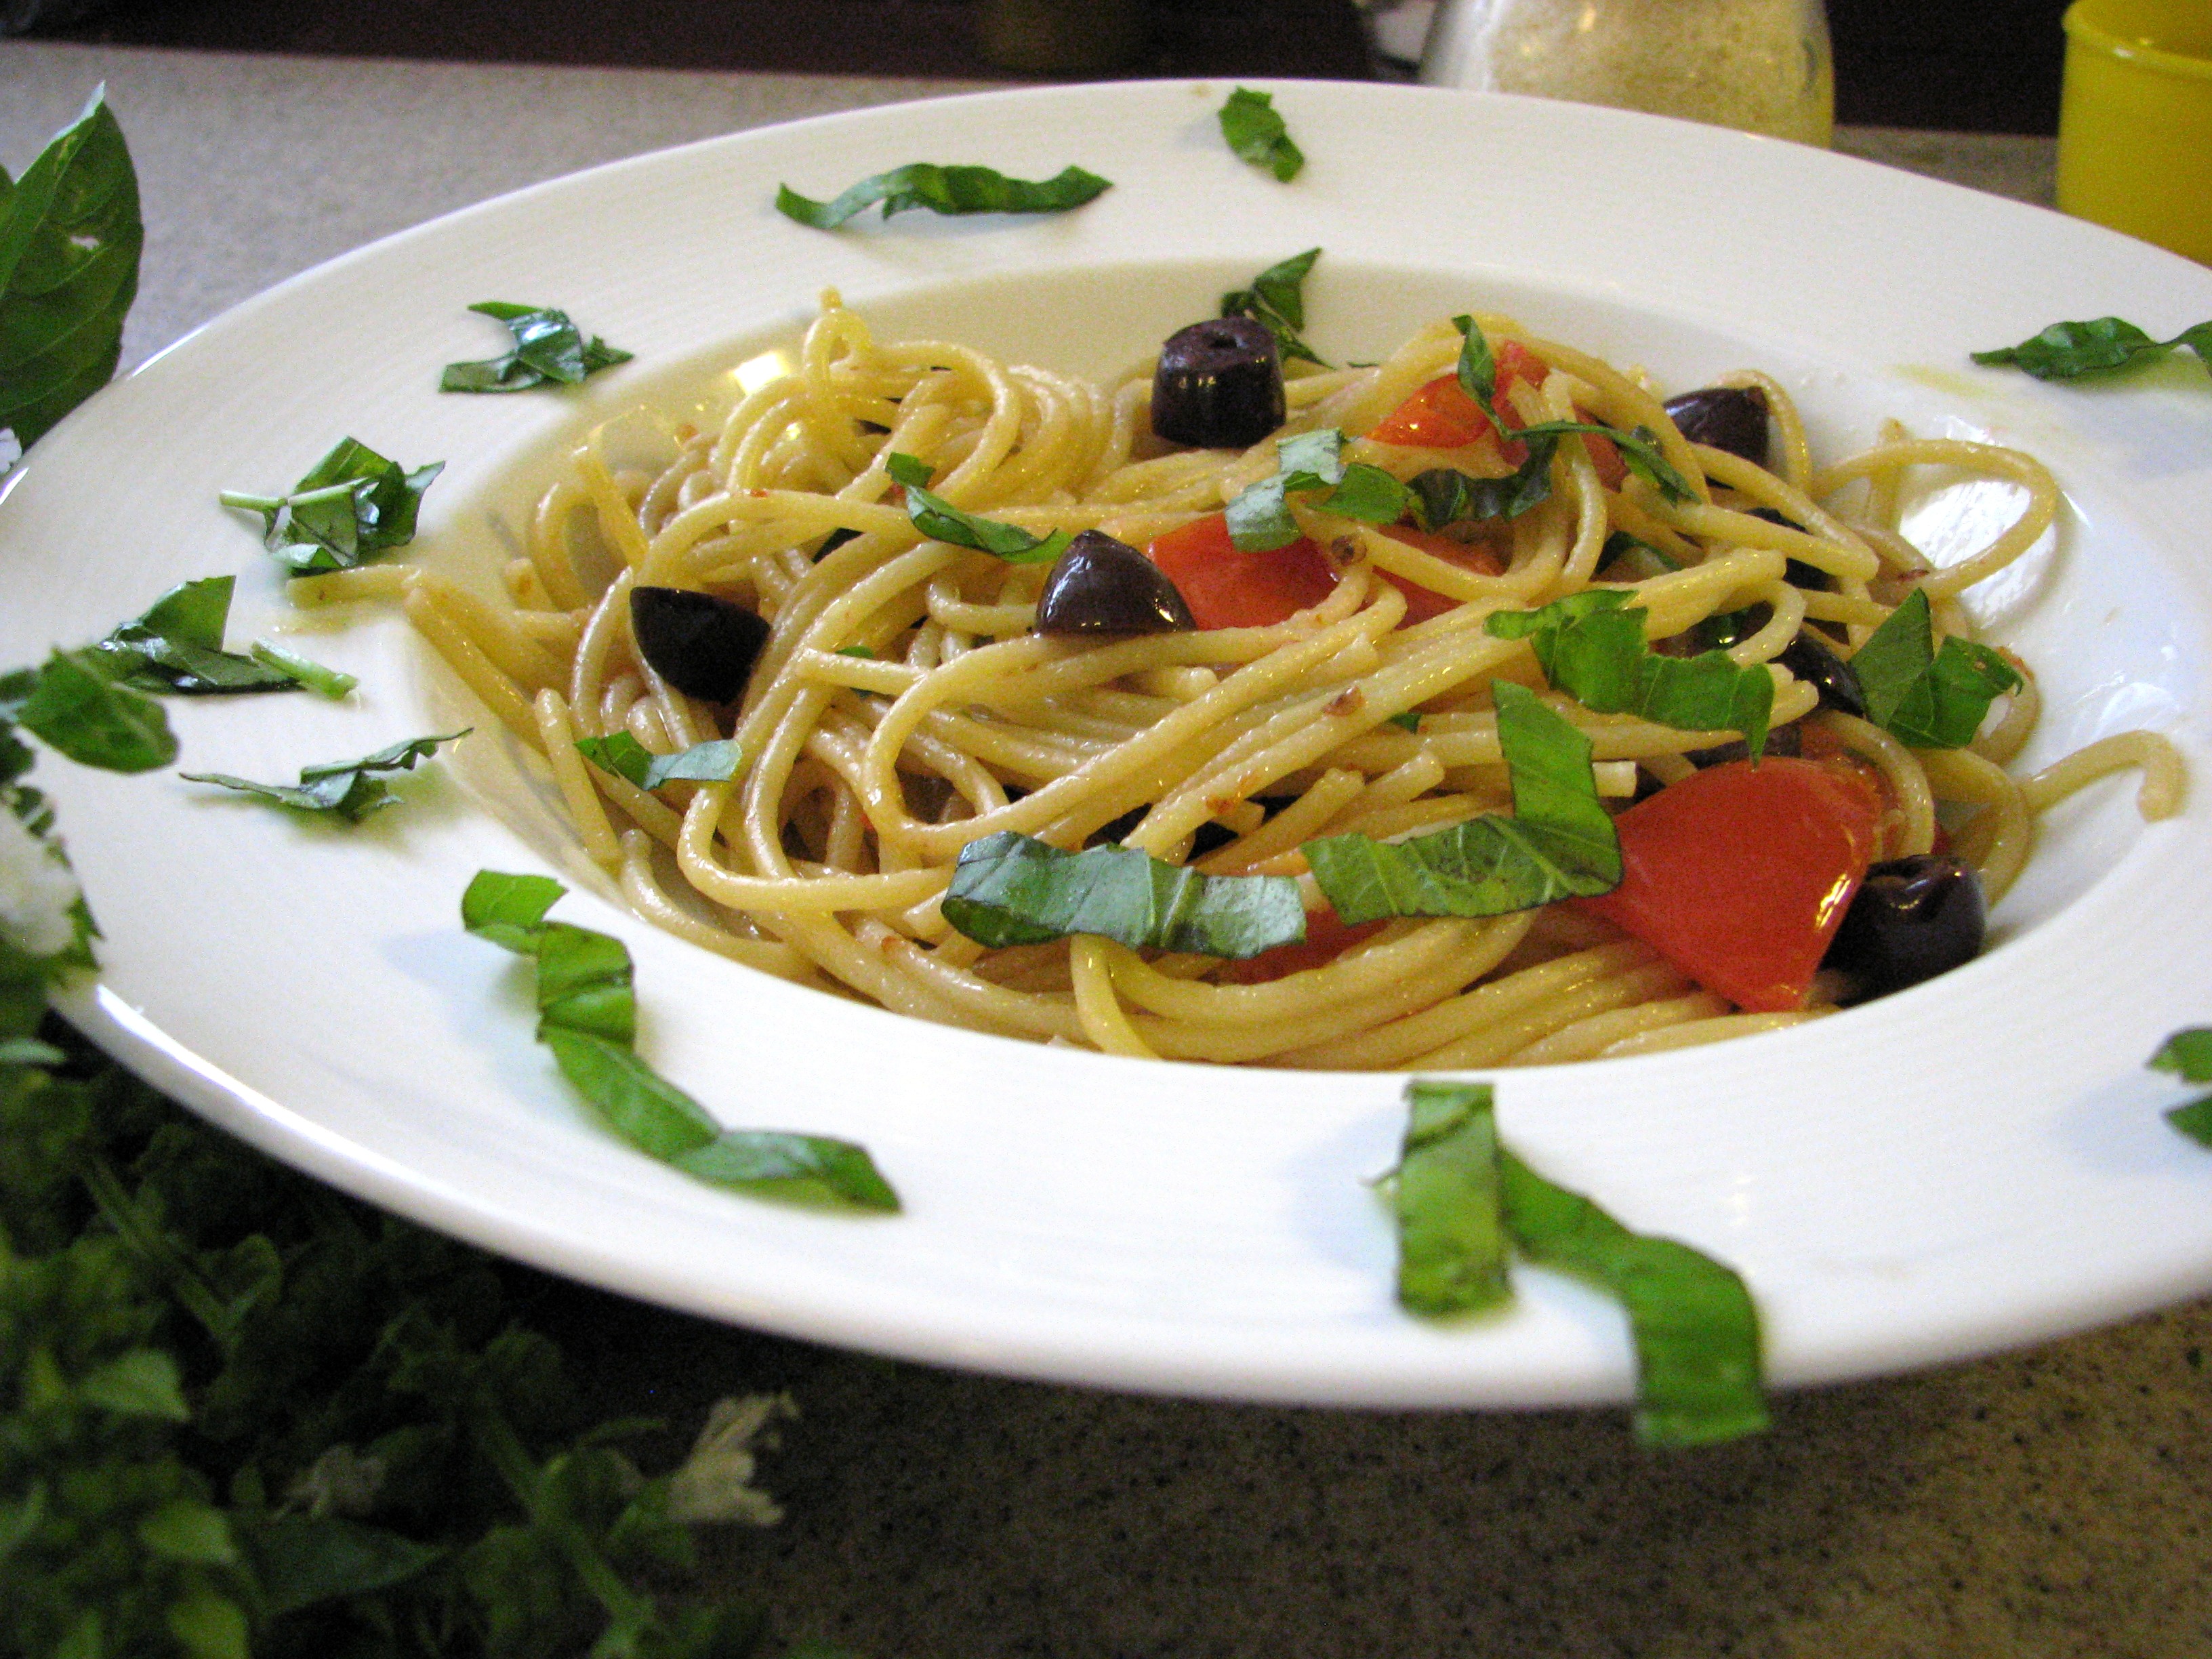 Spaghetti alla Puttanesca (Spaghetti with Hot Sauce) | Tasty Kitchen: A ...